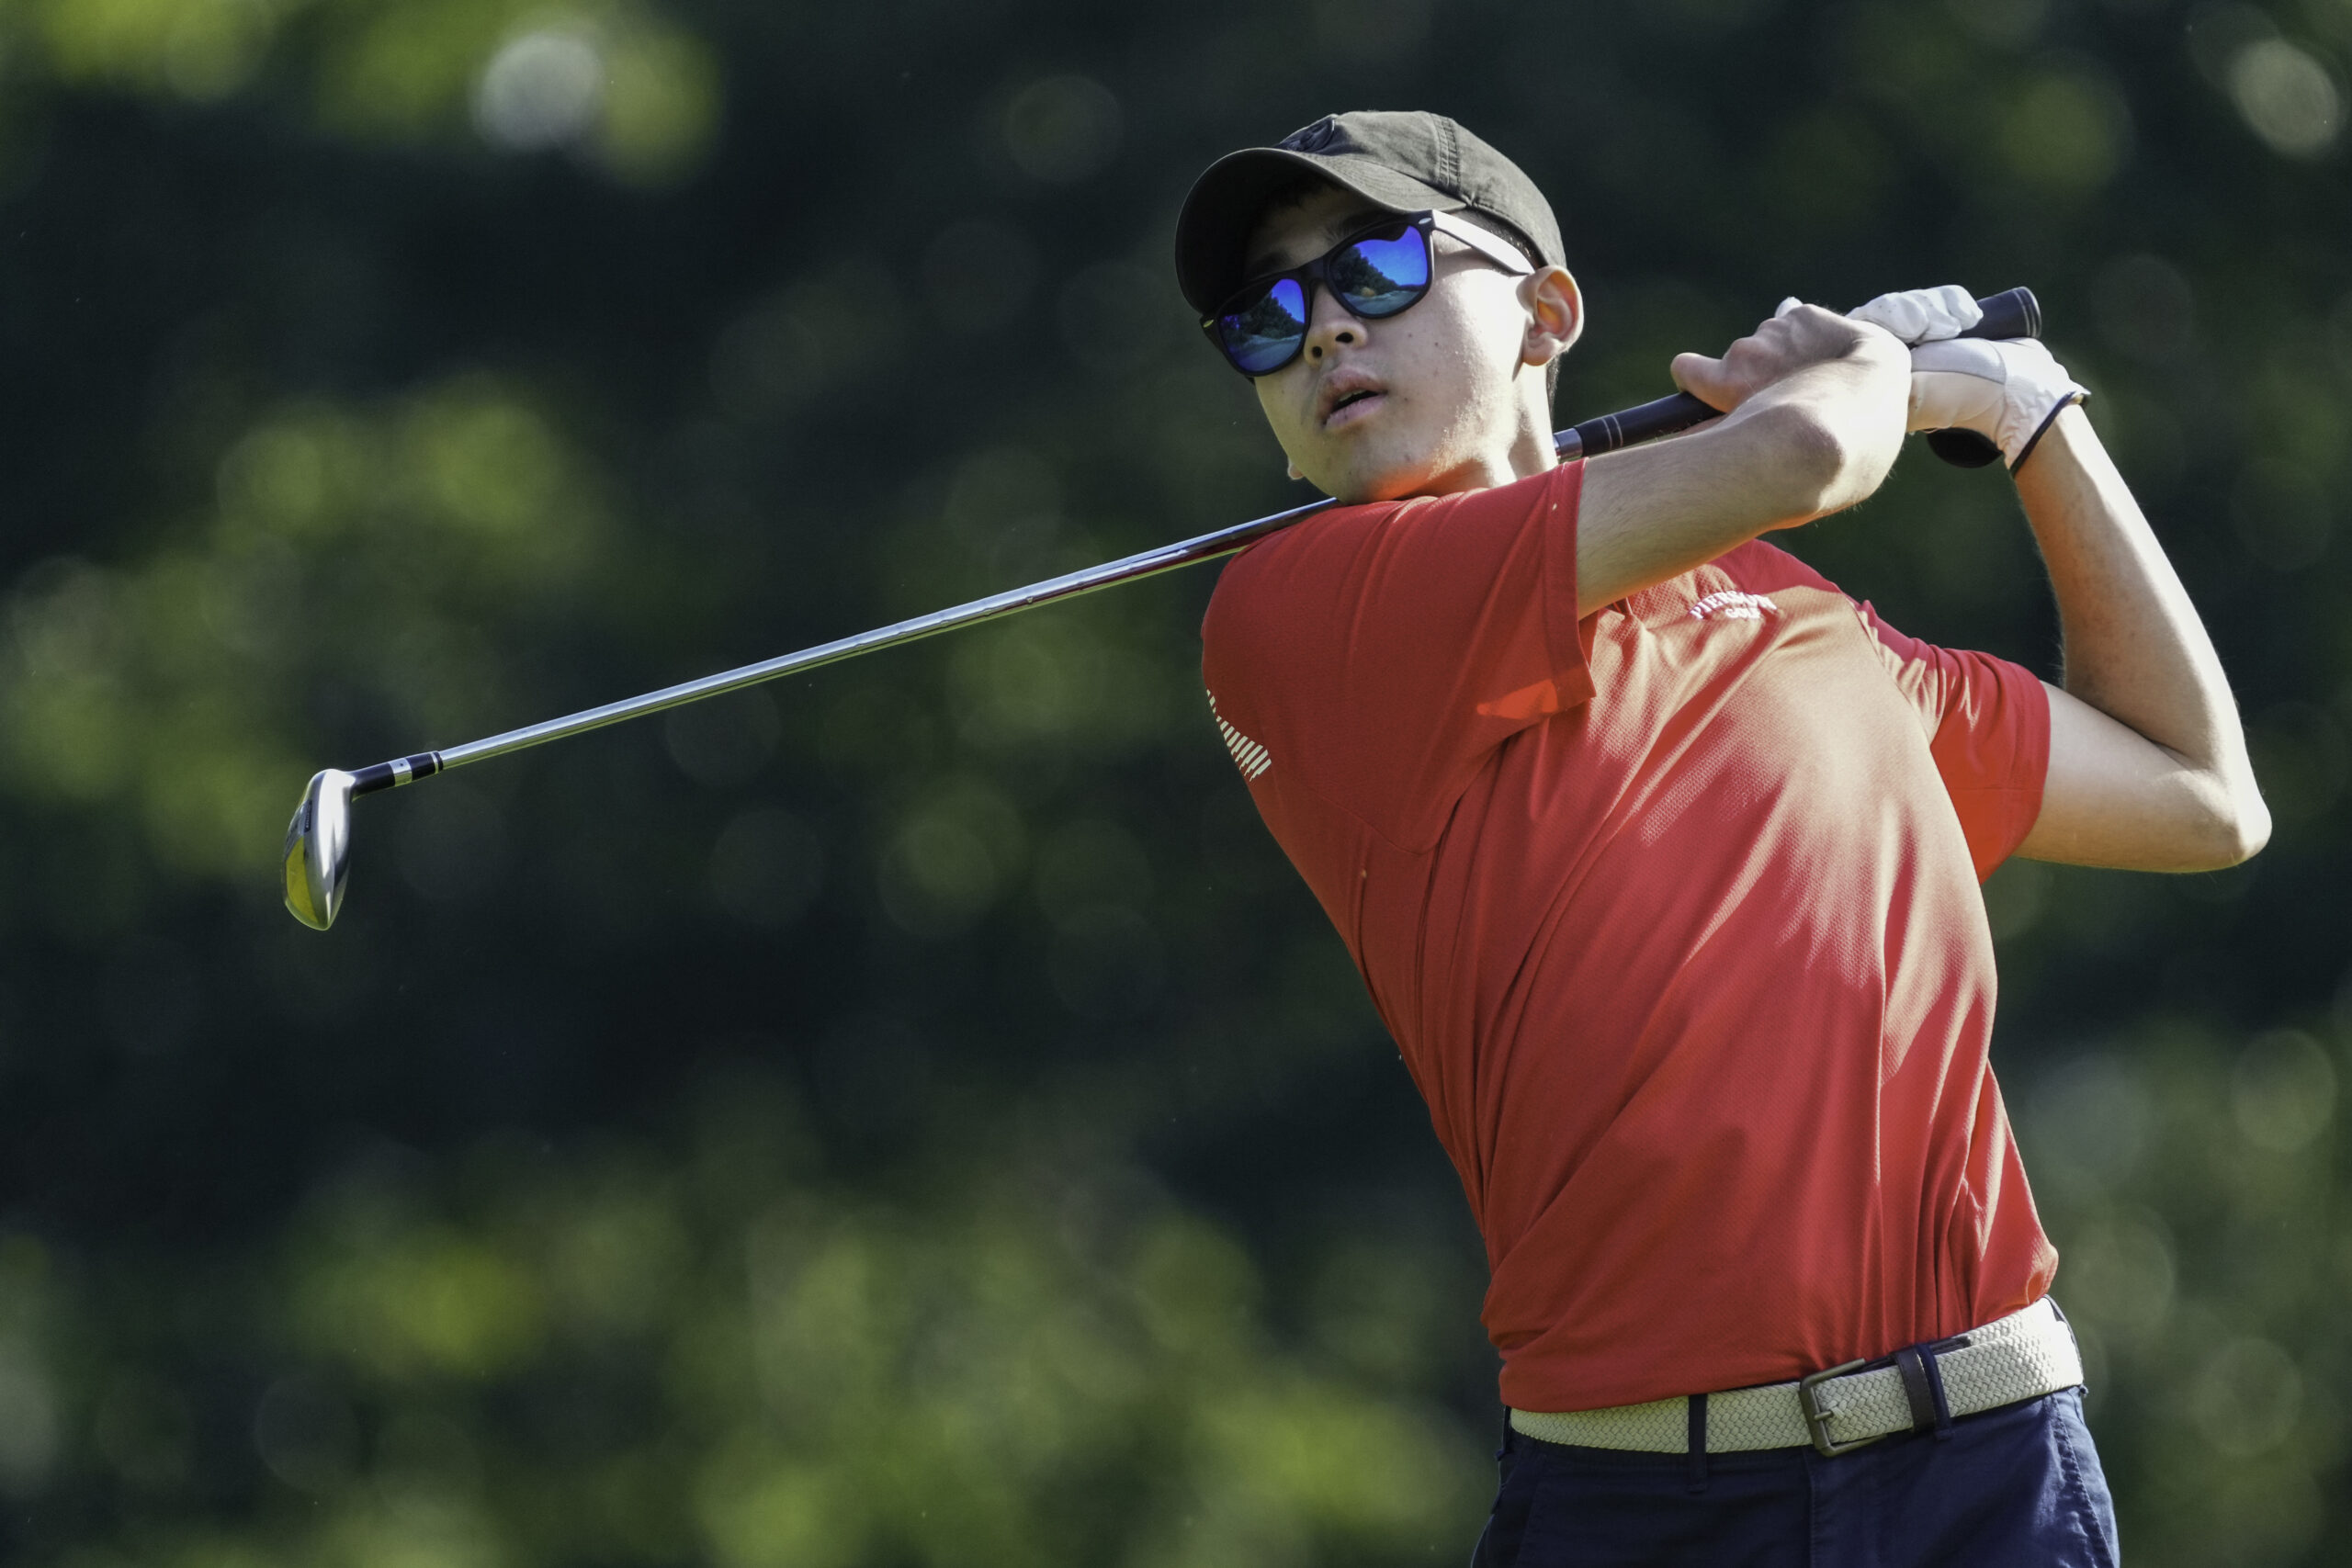 Pierson golf's Yudai Morikawa. RON ESPOSITO